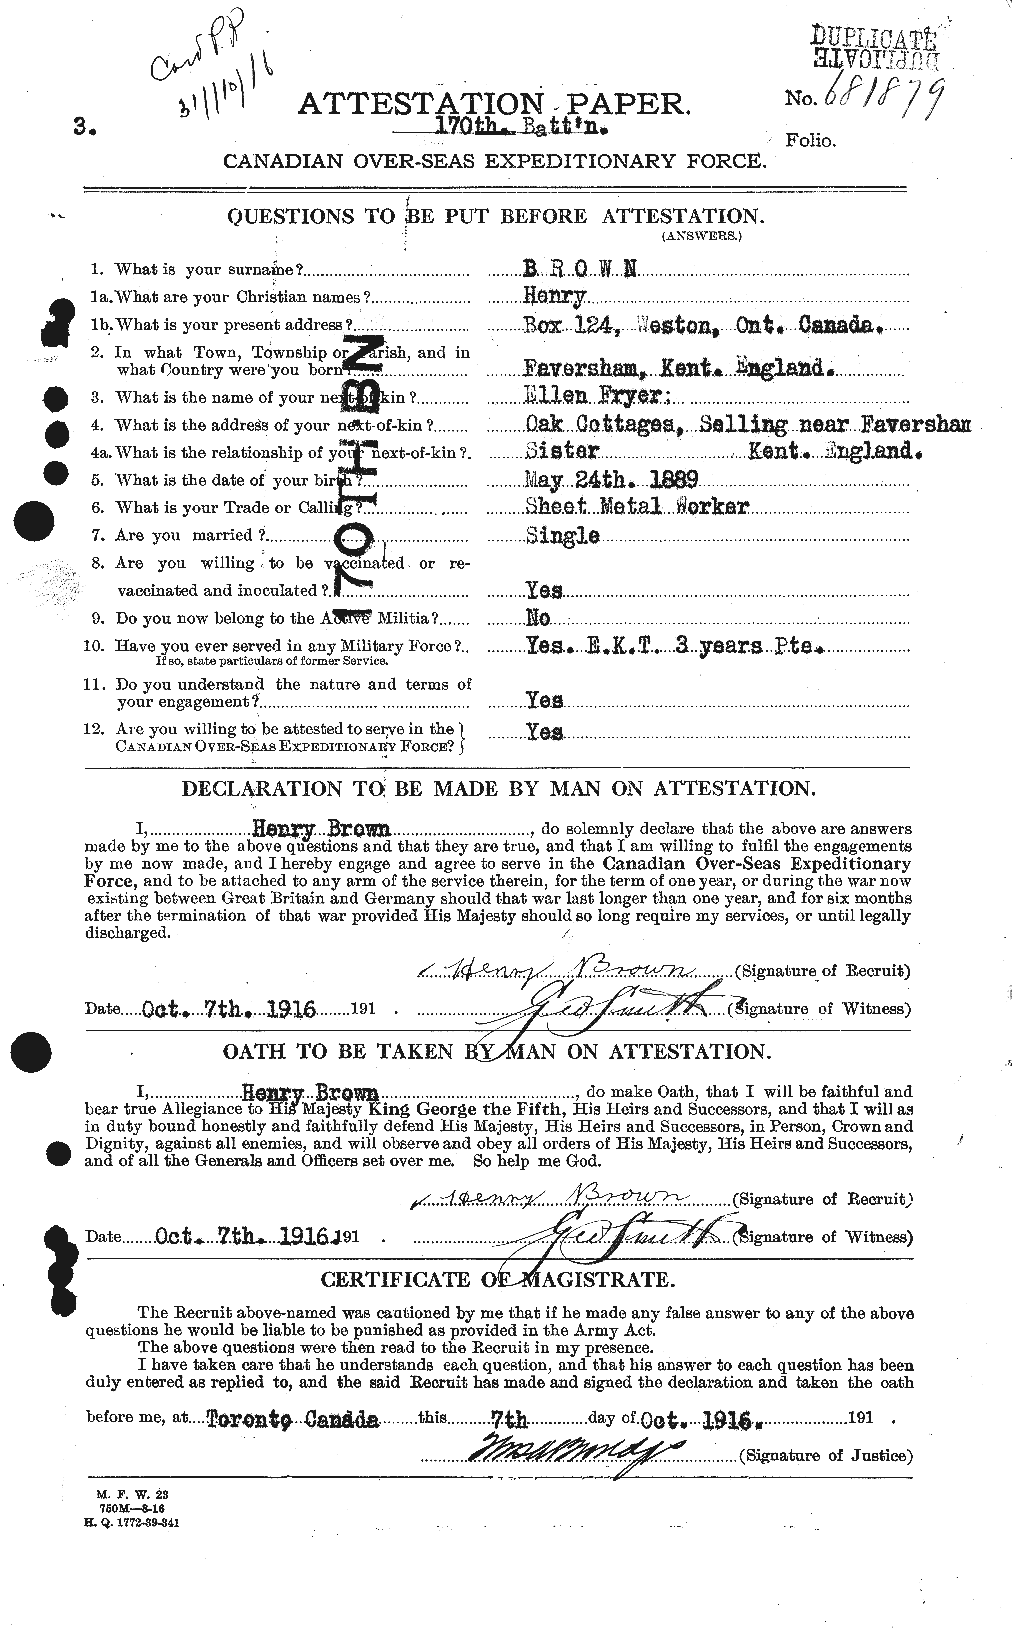 Dossiers du Personnel de la Première Guerre mondiale - CEC 265502a